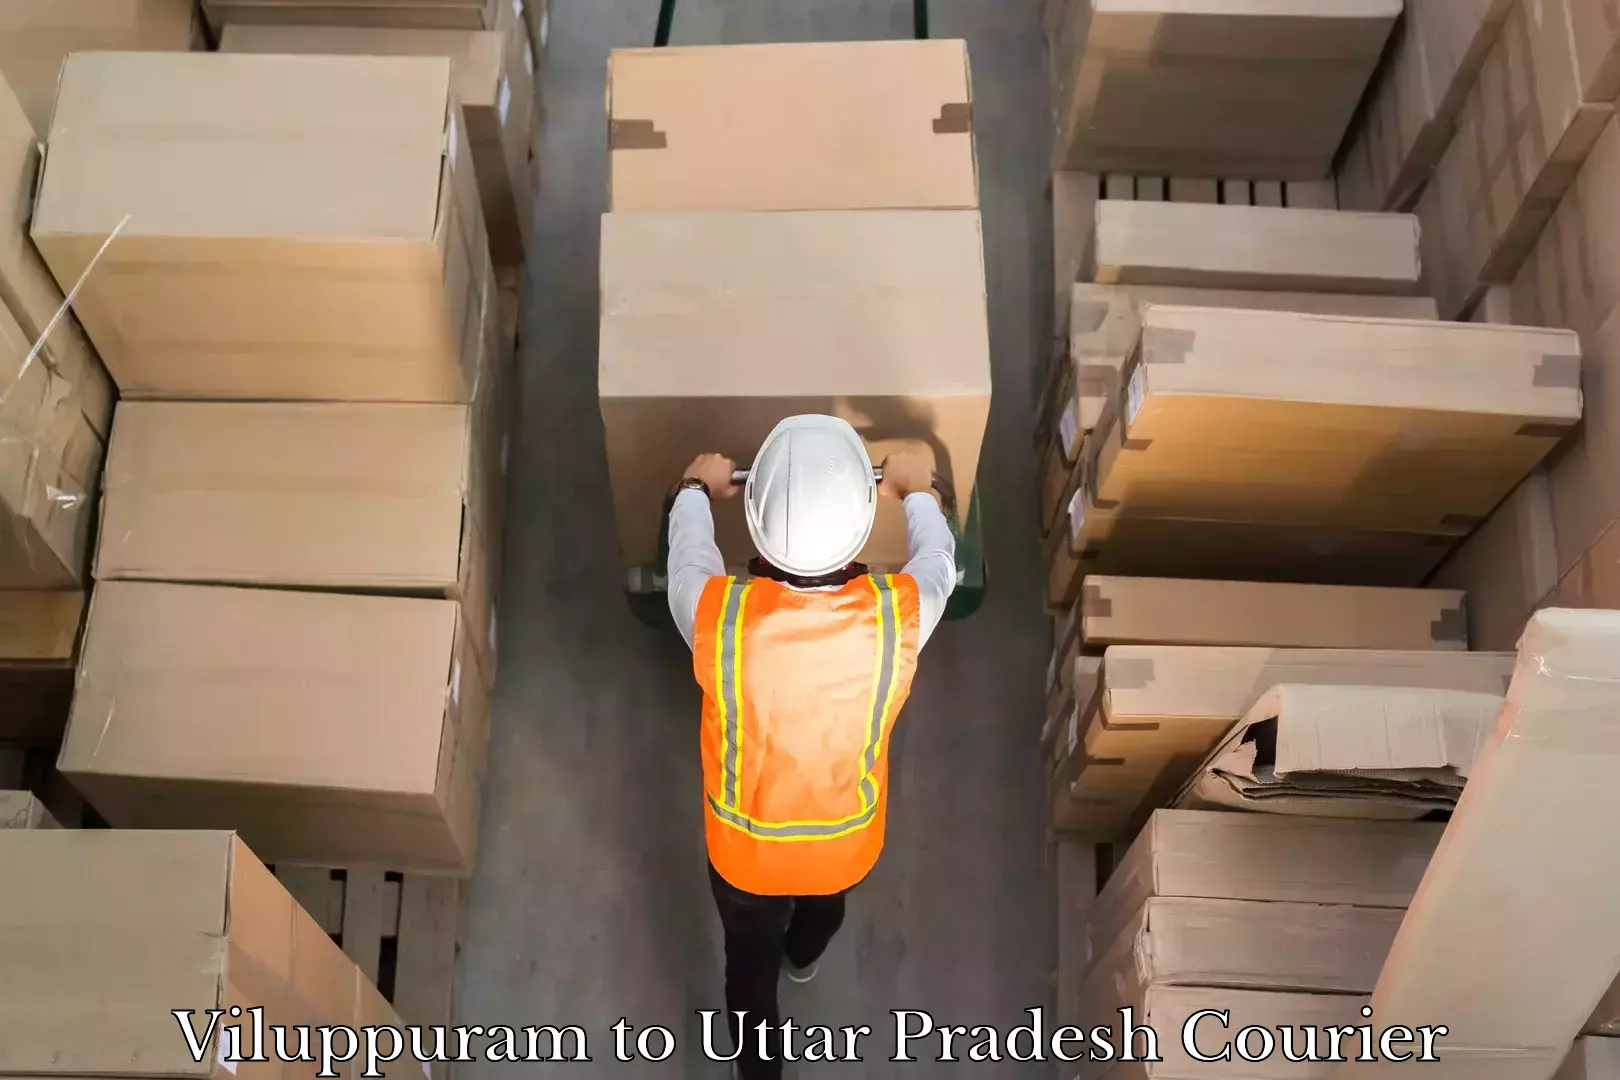 Custom shipping services in Viluppuram to Uttar Pradesh